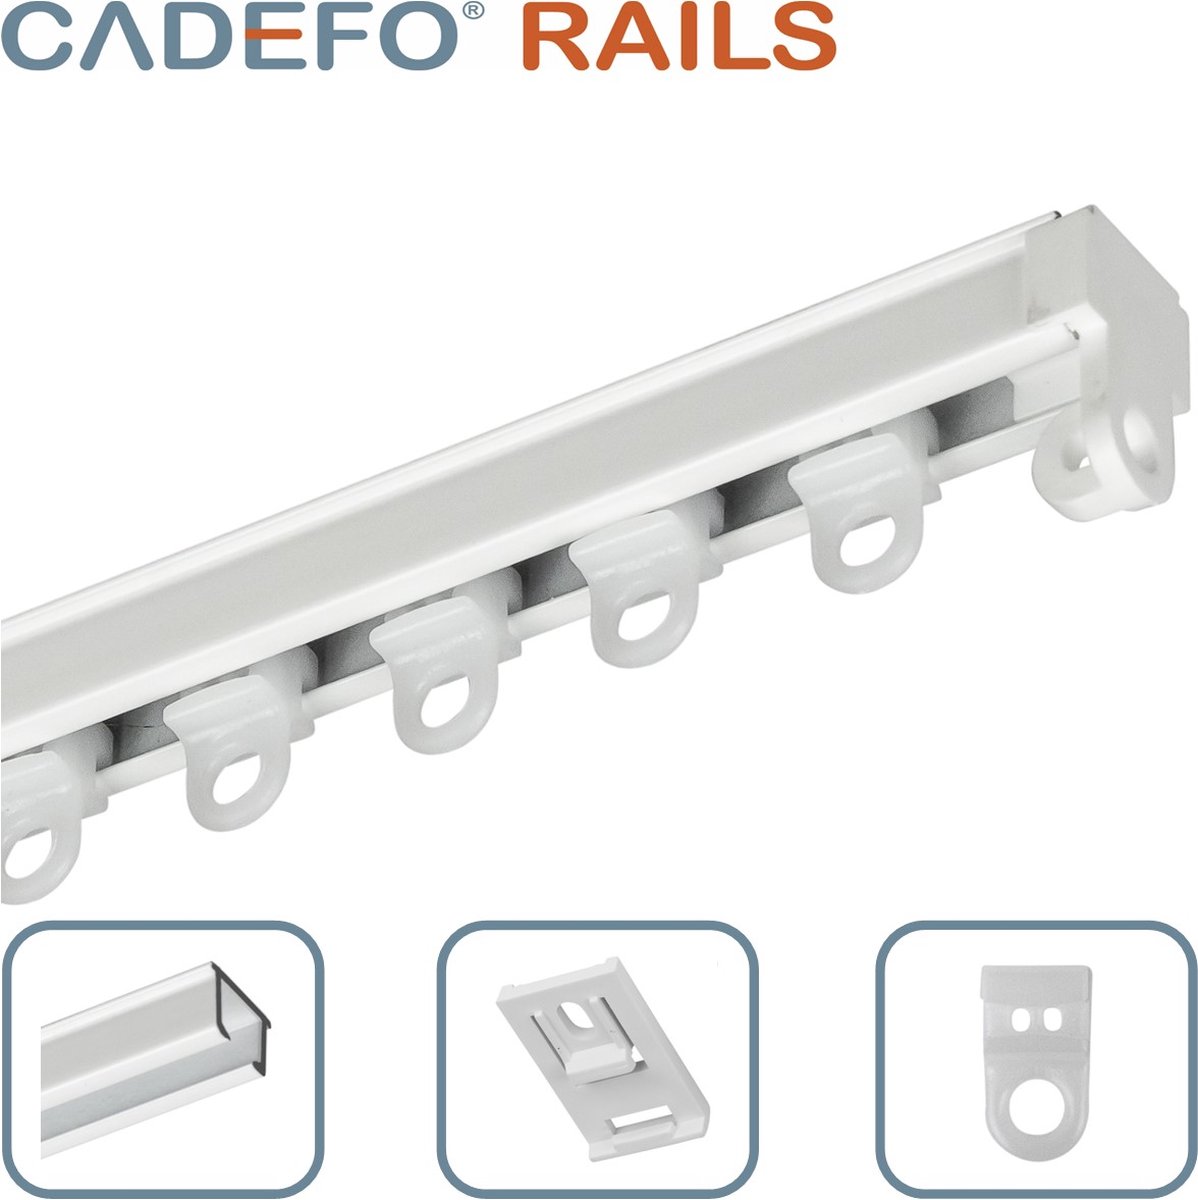 CADEFO RAILS (301 - 350 cm) Gordijnrails - Compleet op maat! - UIT 1 STUK - Leverbaar tot 6 meter - Plafondbevestiging - Lengte 333 cm